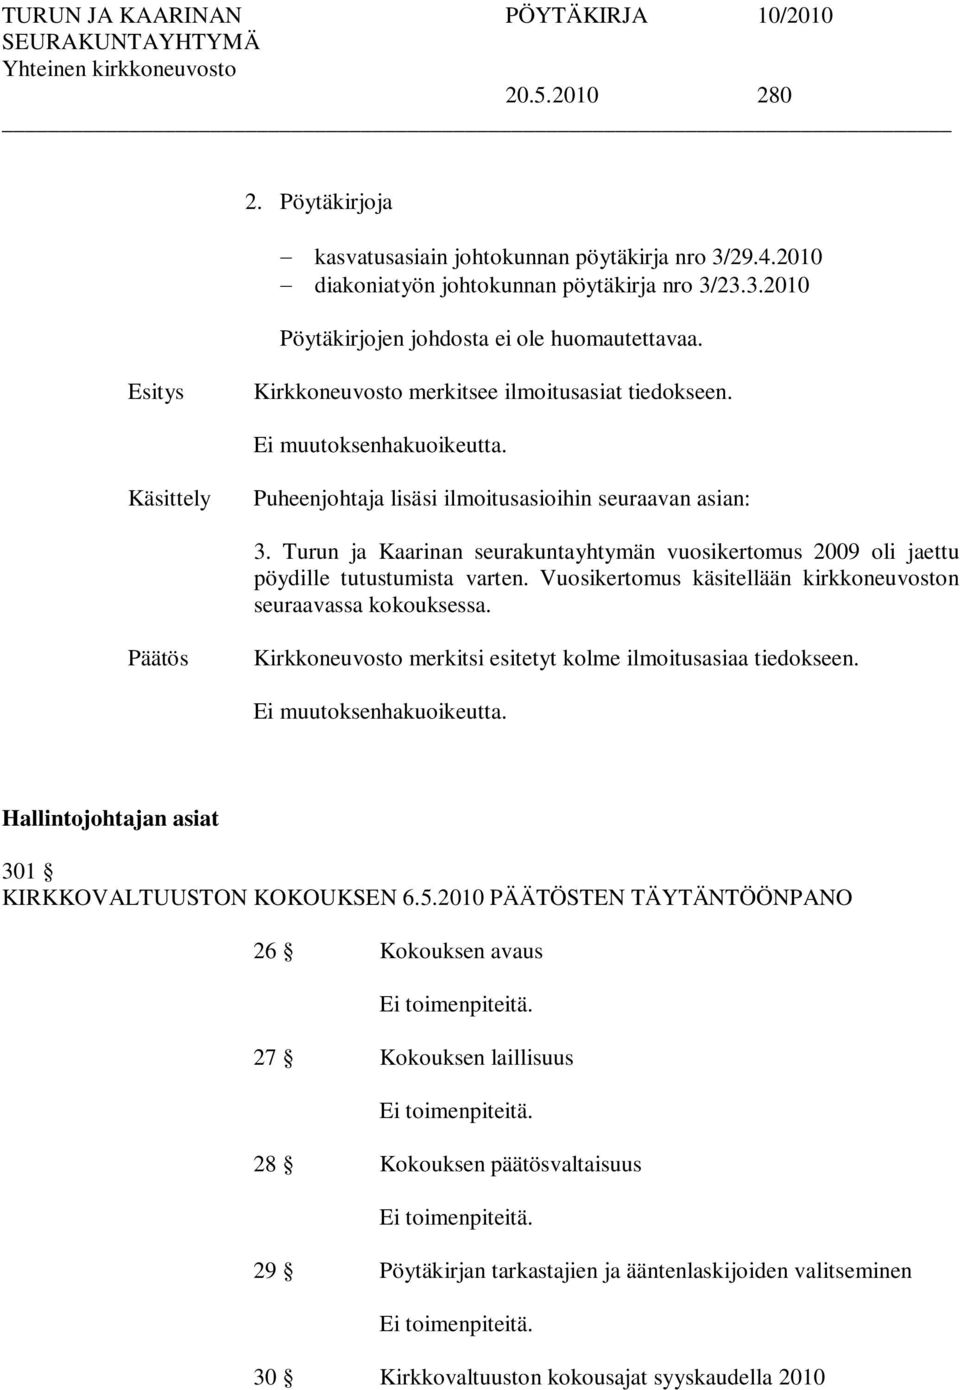 Turun ja Kaarinan seurakuntayhtymän vuosikertomus 2009 oli jaettu pöydille tutustumista varten. Vuosikertomus käsitellään kirkkoneuvoston seuraavassa kokouksessa.